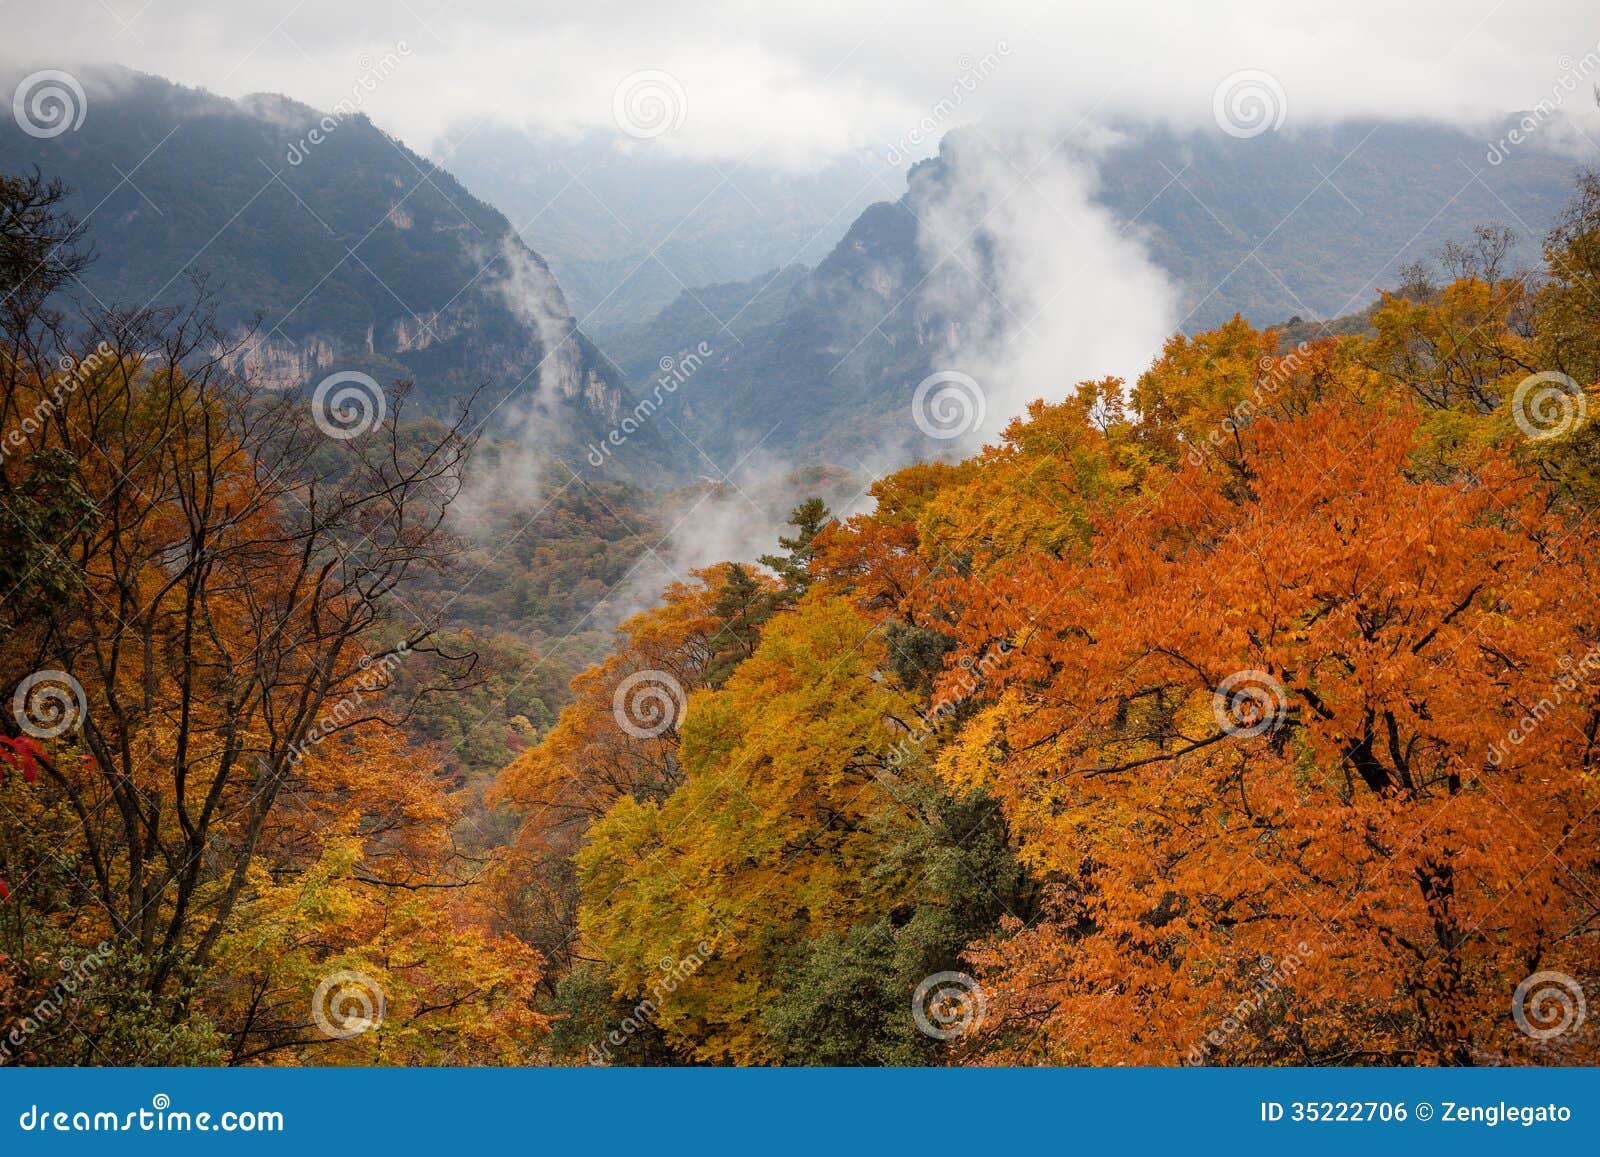 guangwu mountain in autumn